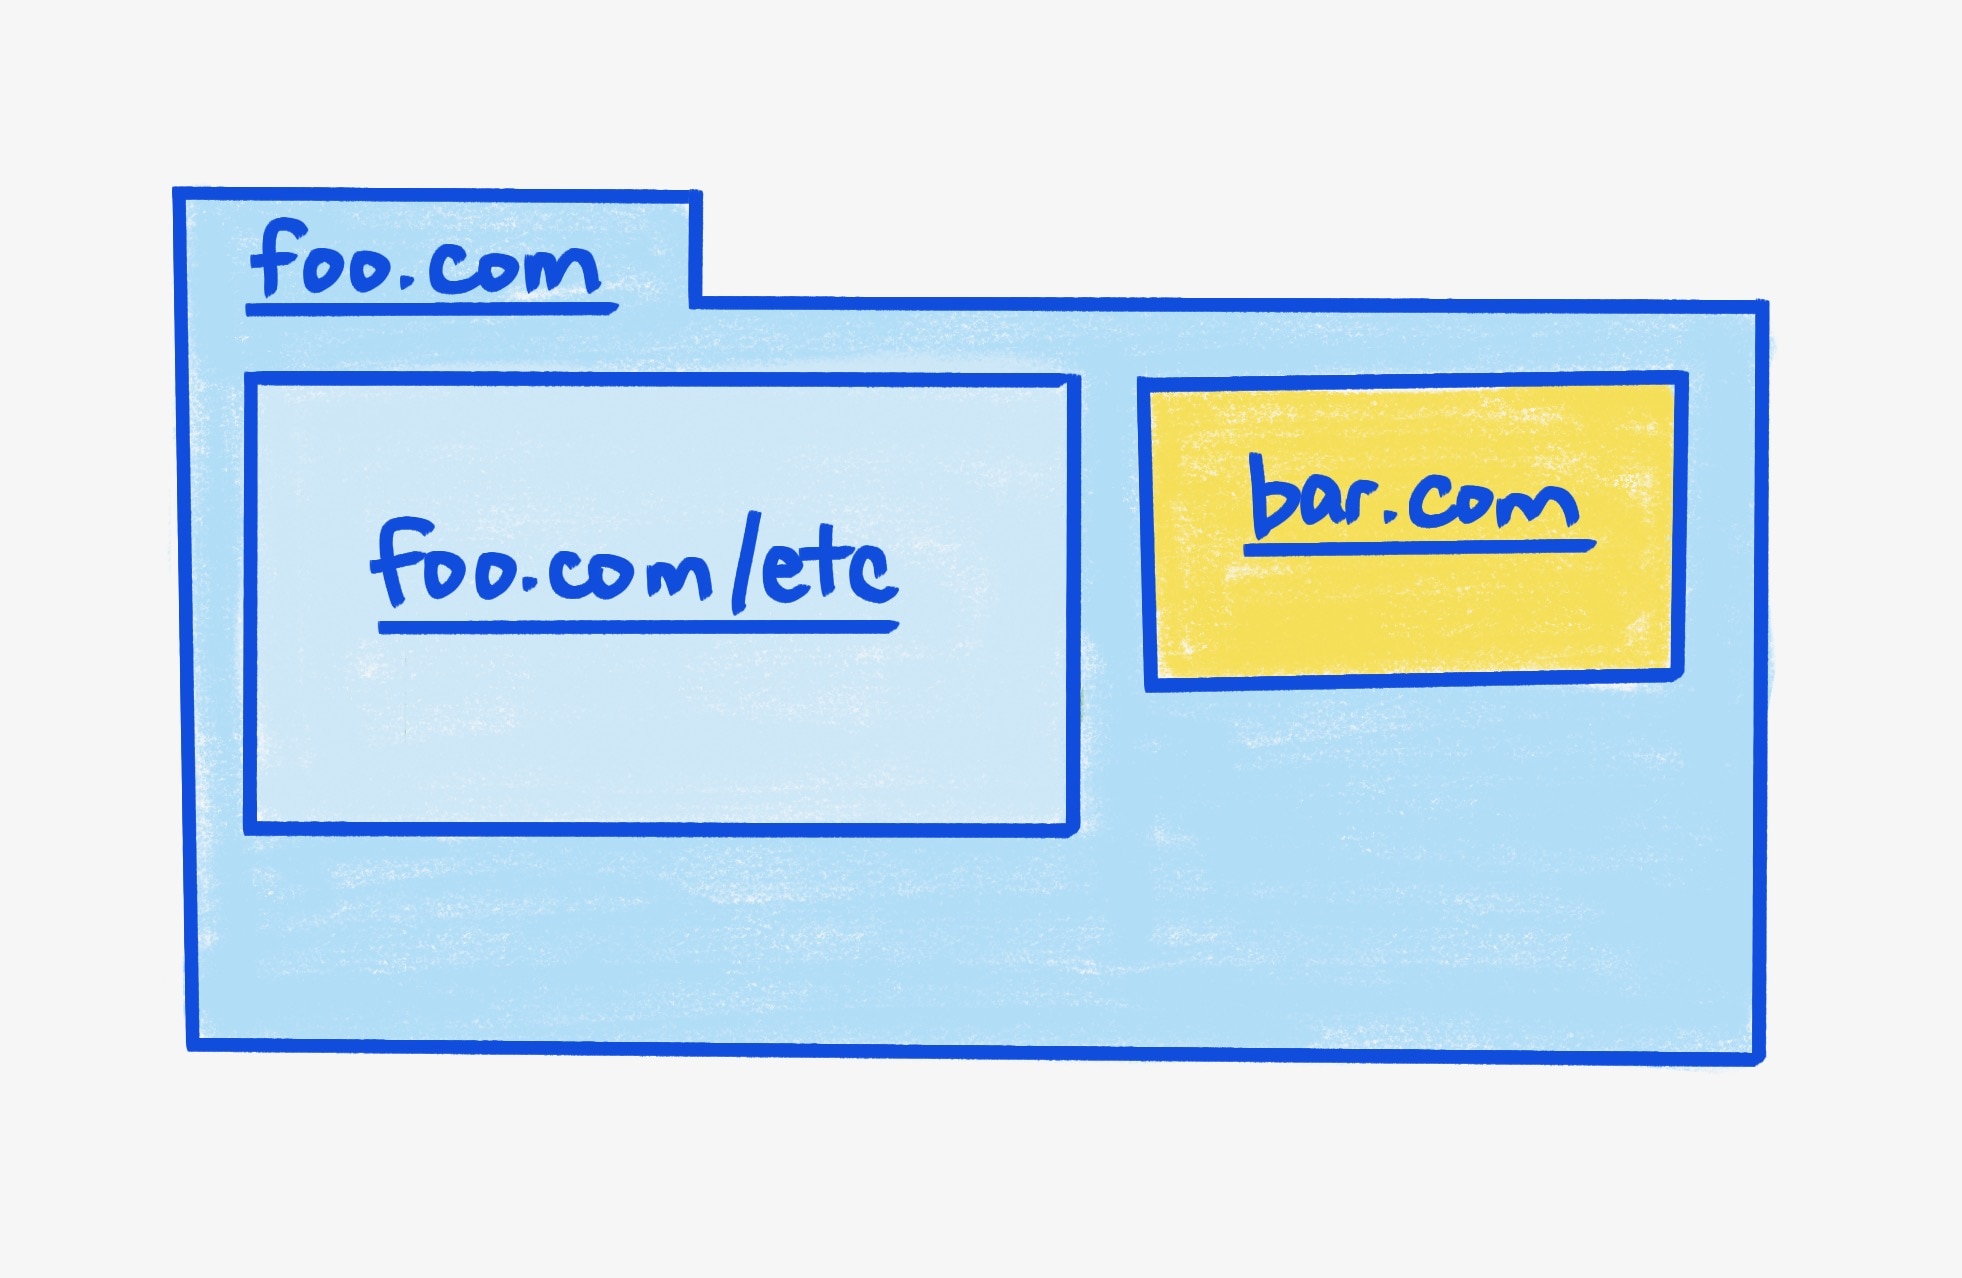 A parent frame foo.com, containing two iframes.